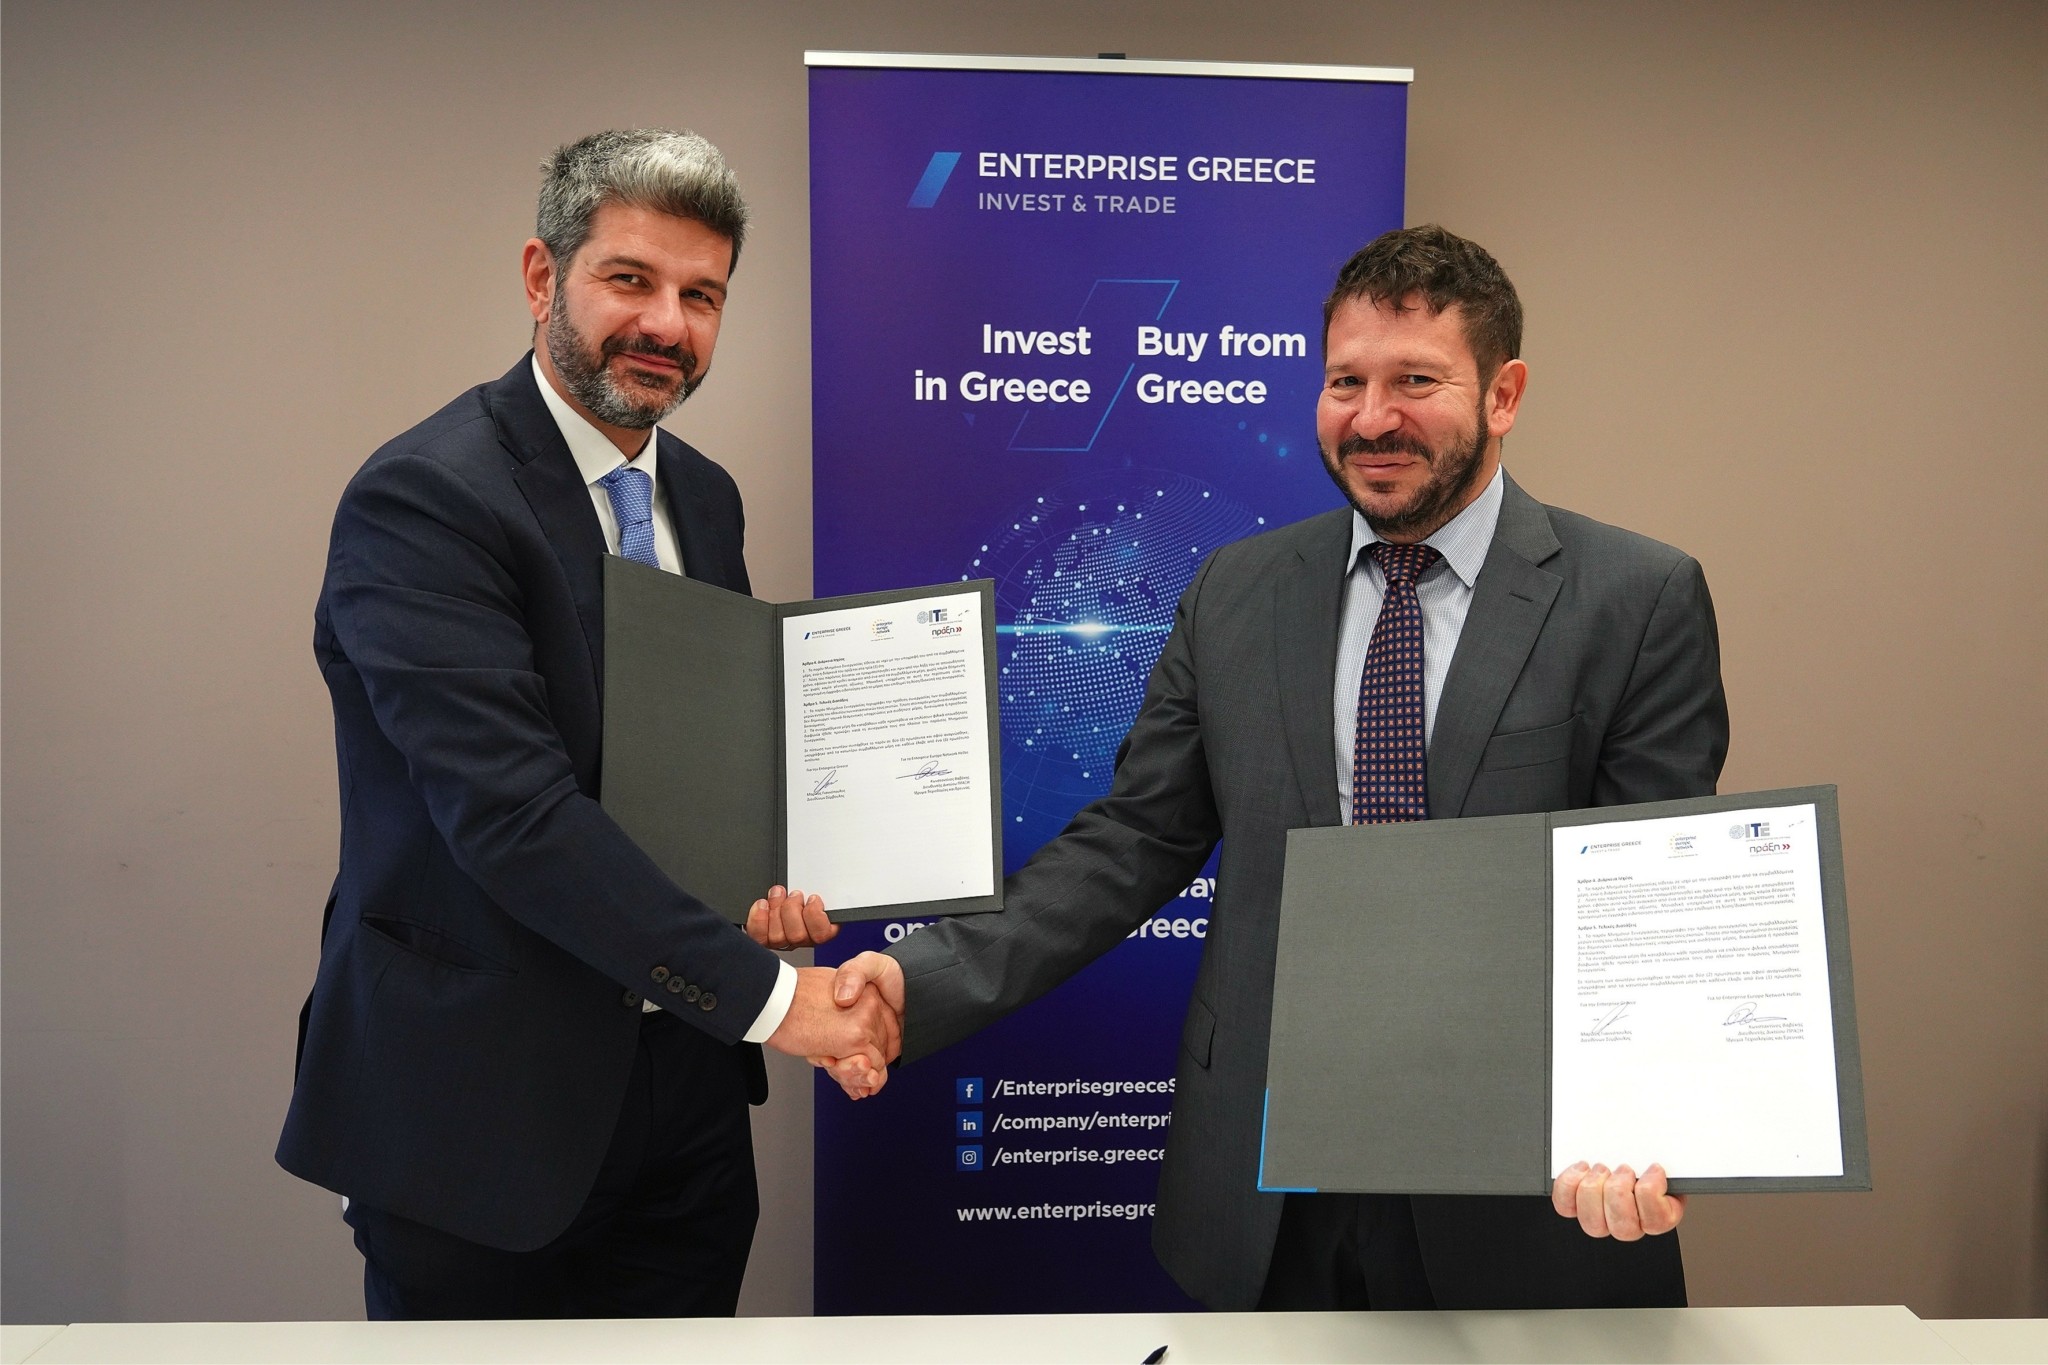 Μνημόνιο Συνεργασίας υπέγραψαν Enterprise Greece και Enterprise Europe Network Hellas